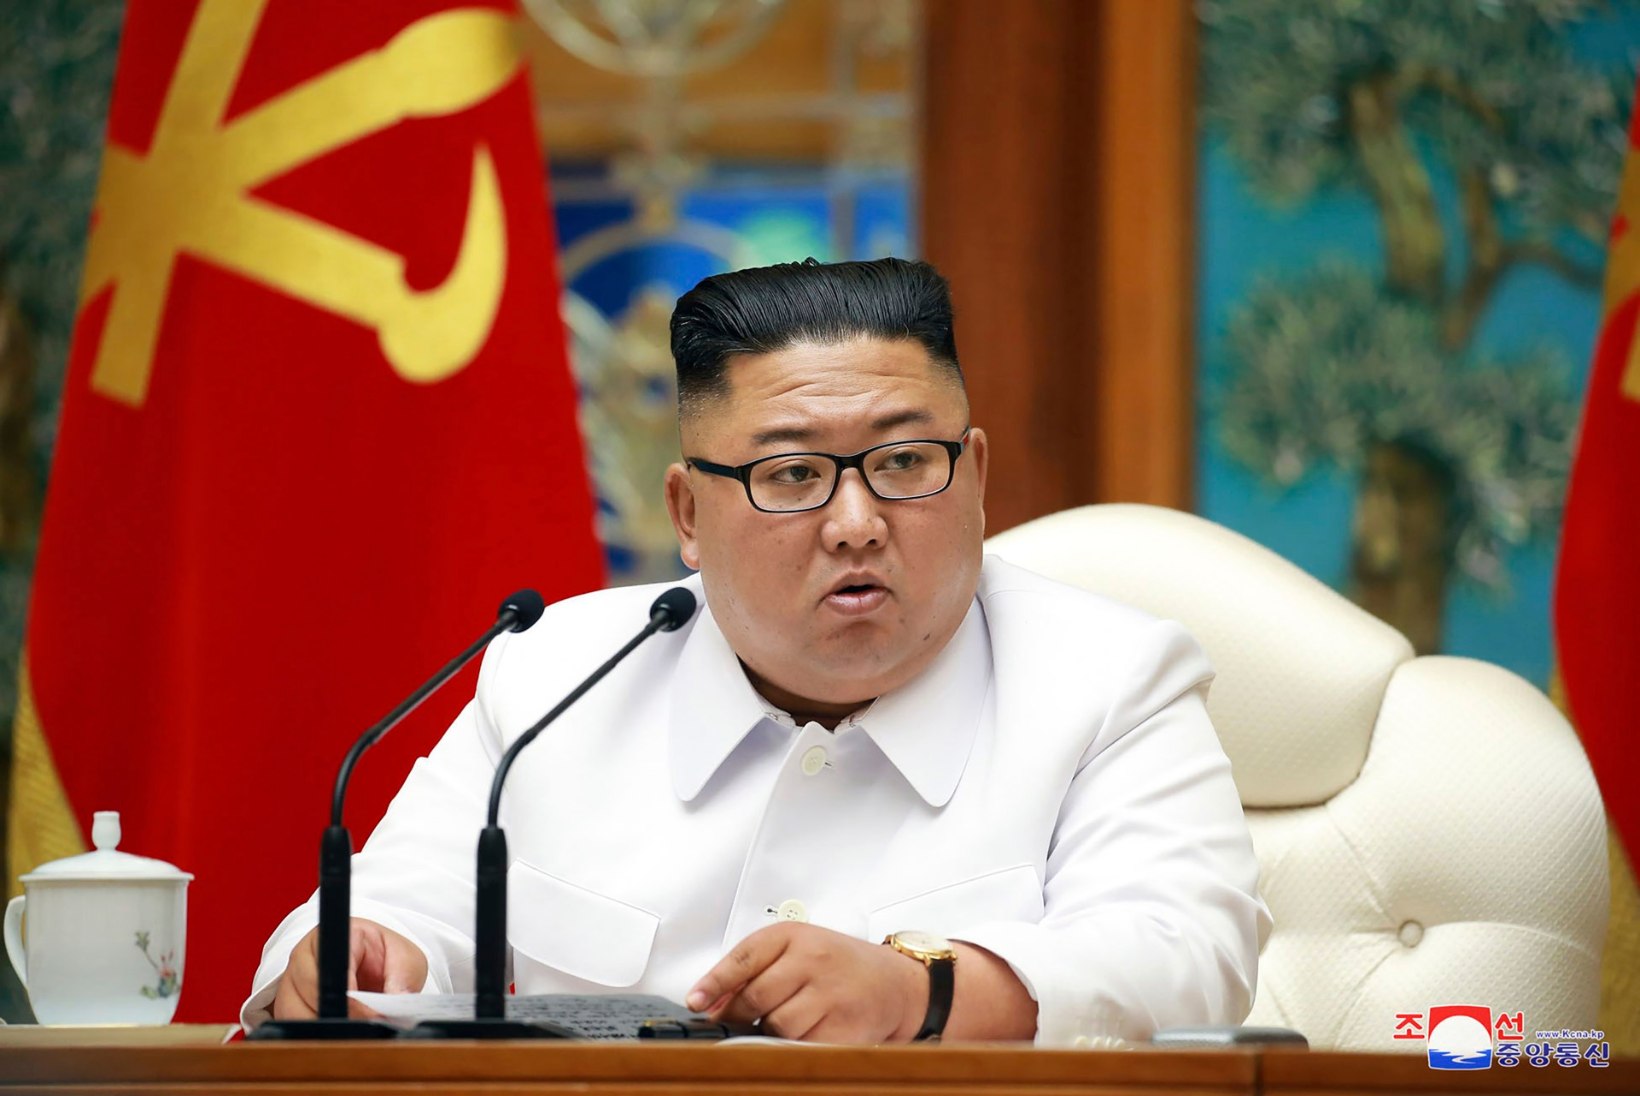 Esimene koroonahaige Põhja-Koreas?